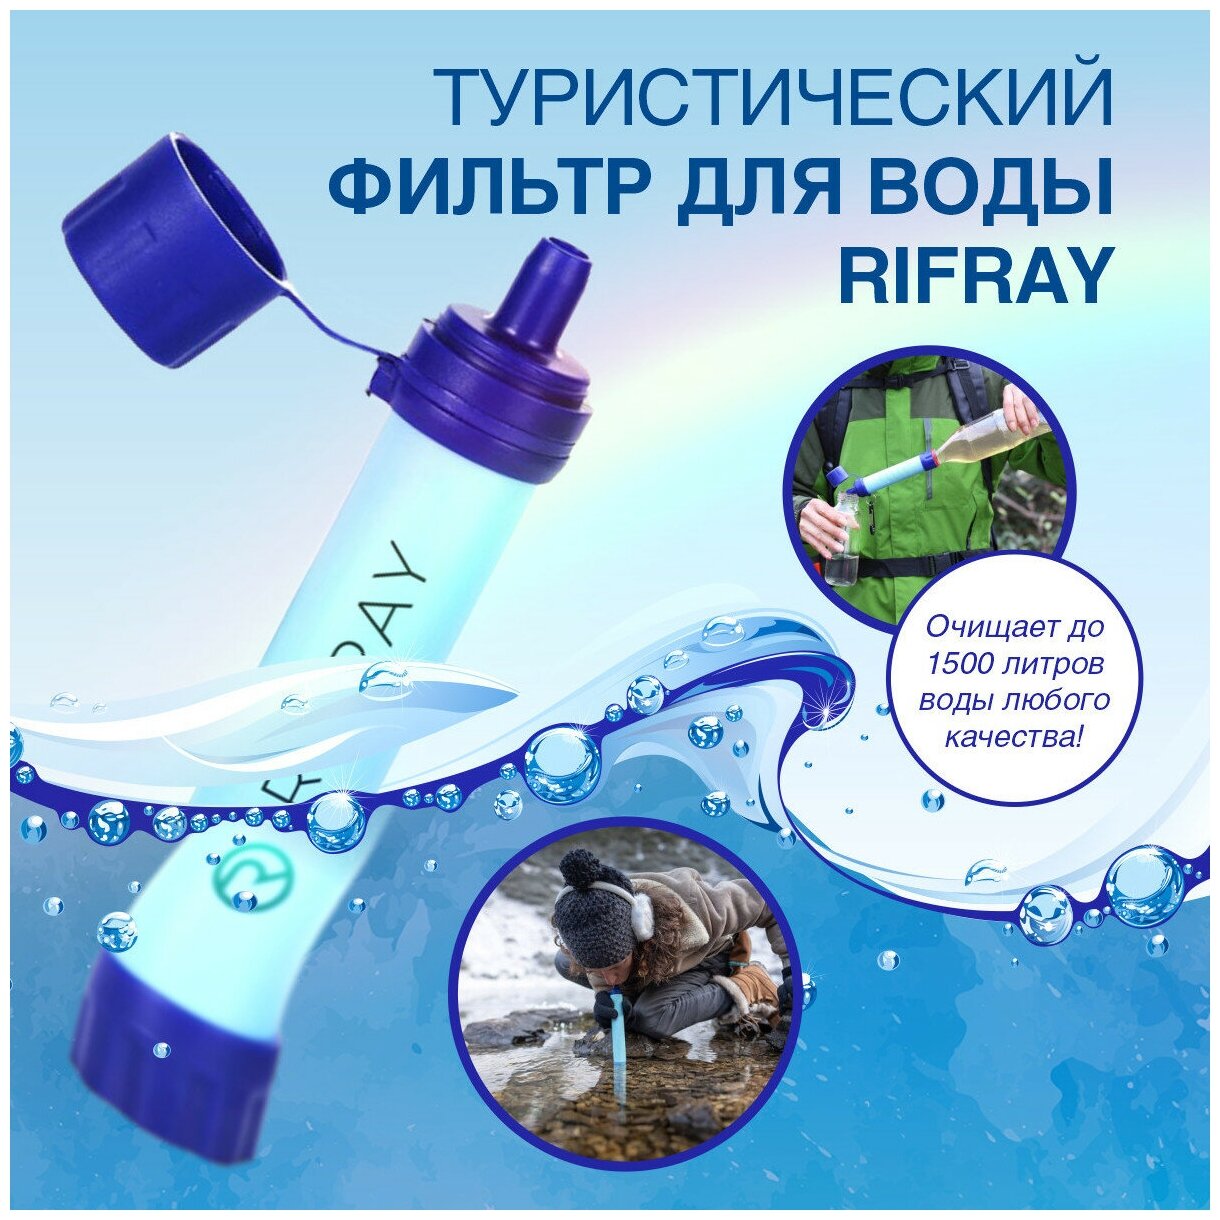 Туристический фильтр для воды RIFRAY/Очистка воды/Фильтр для очистки воды/Водоочистка/Фильтрация воды/Водоочиститель